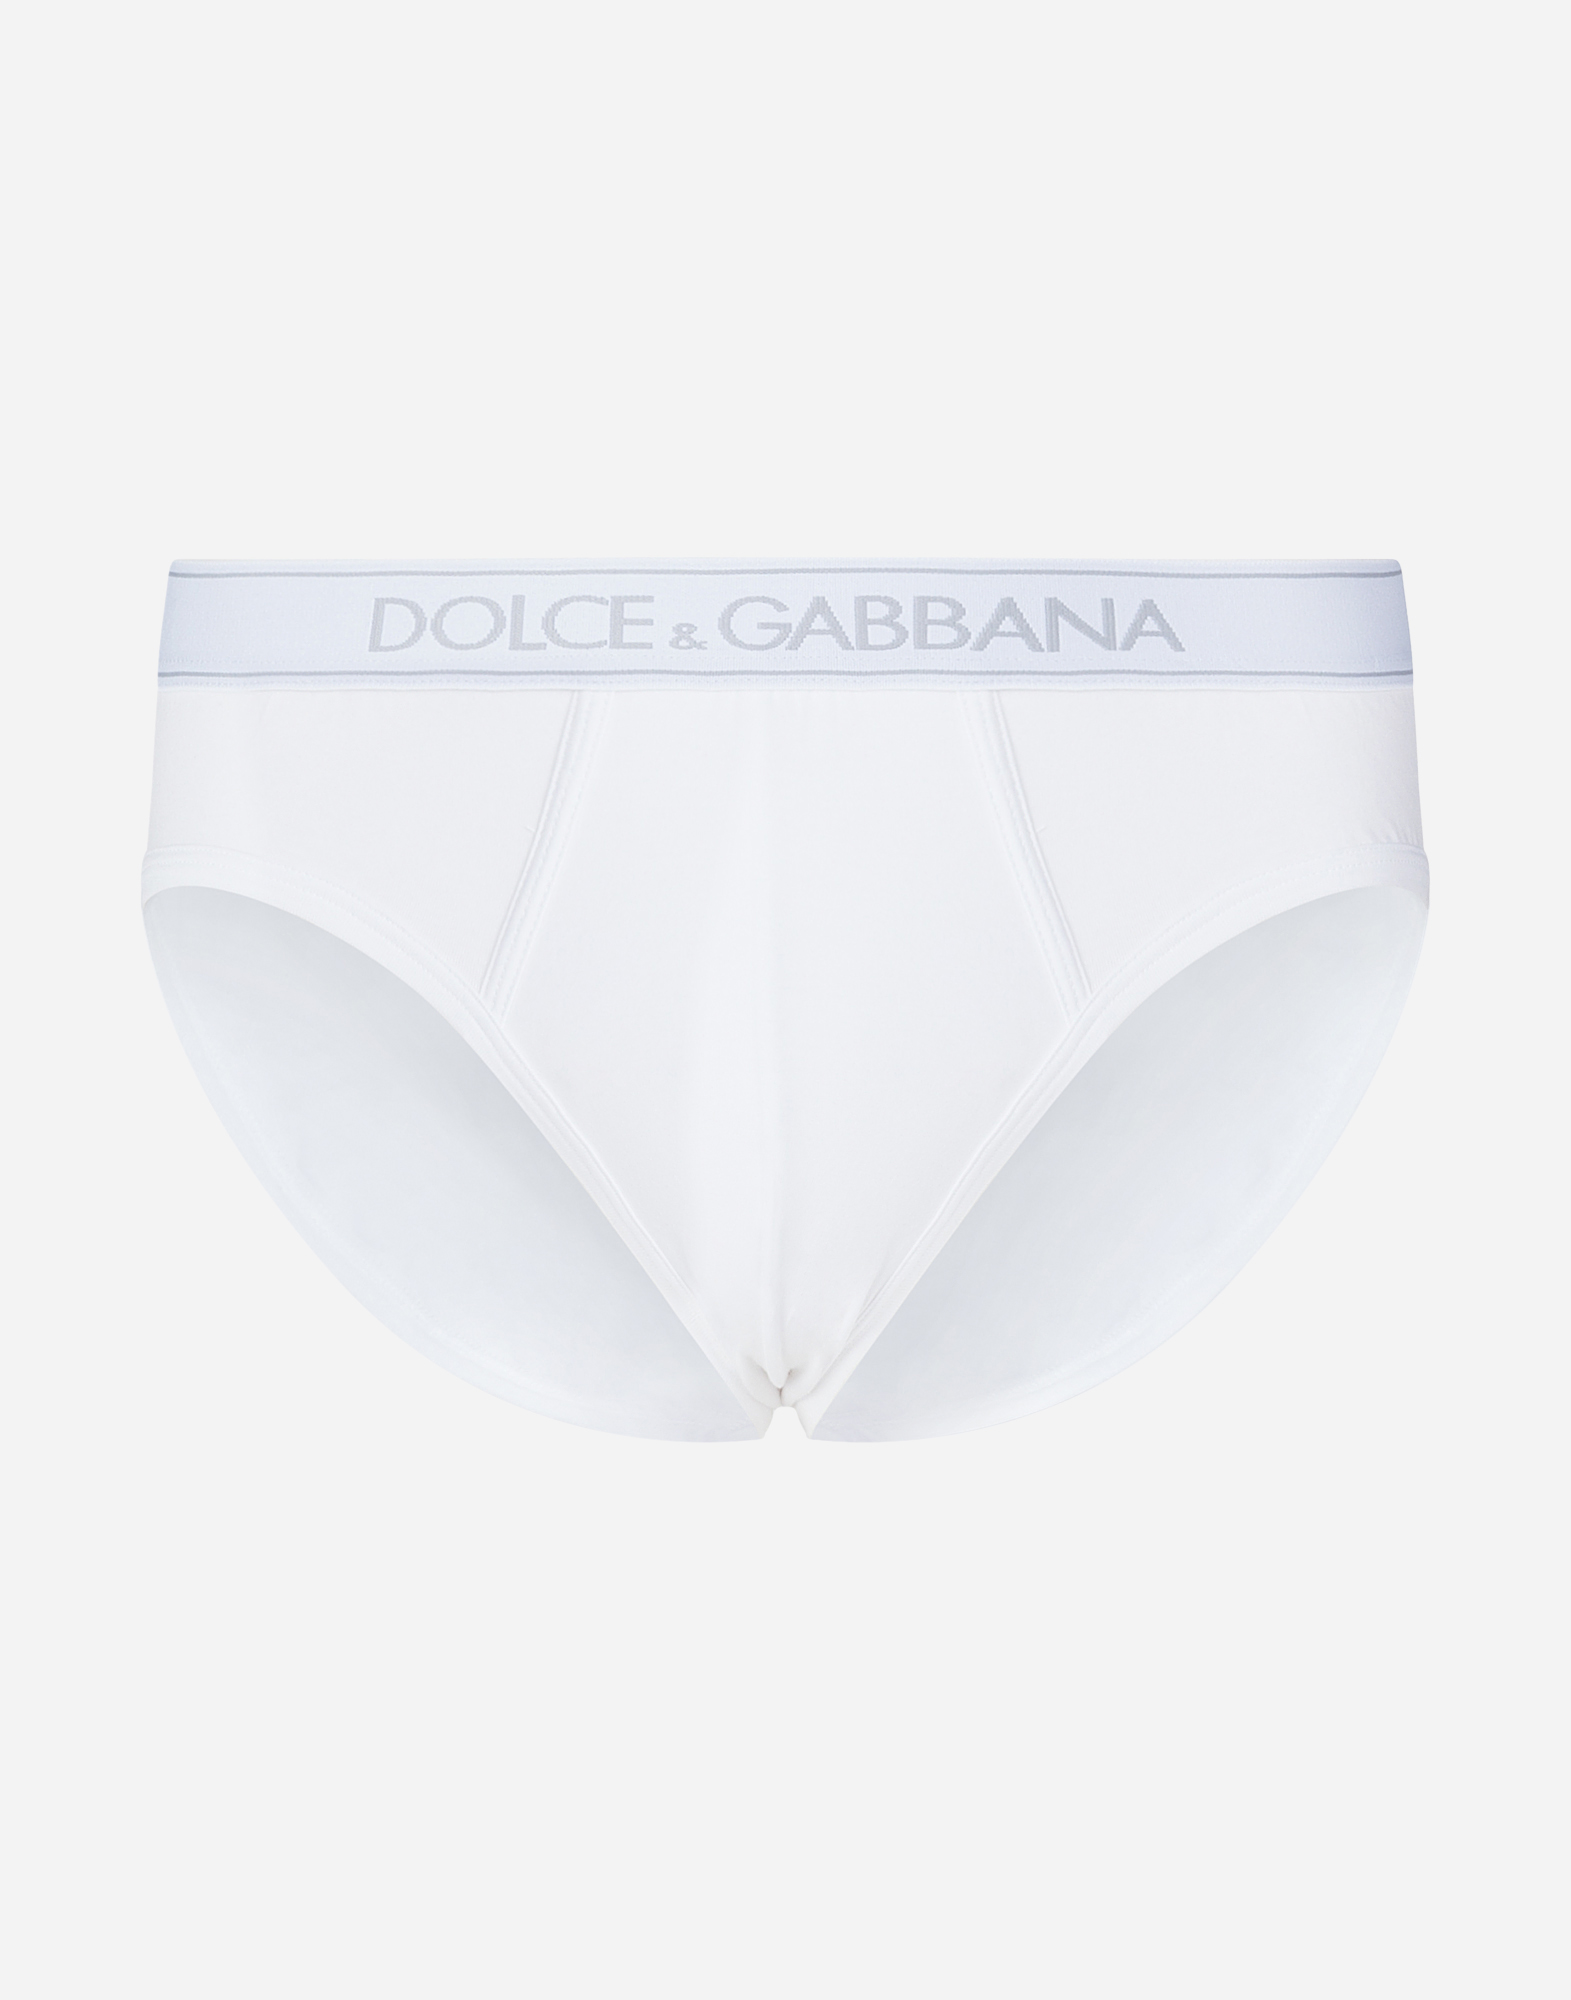 dolce gabbana panties